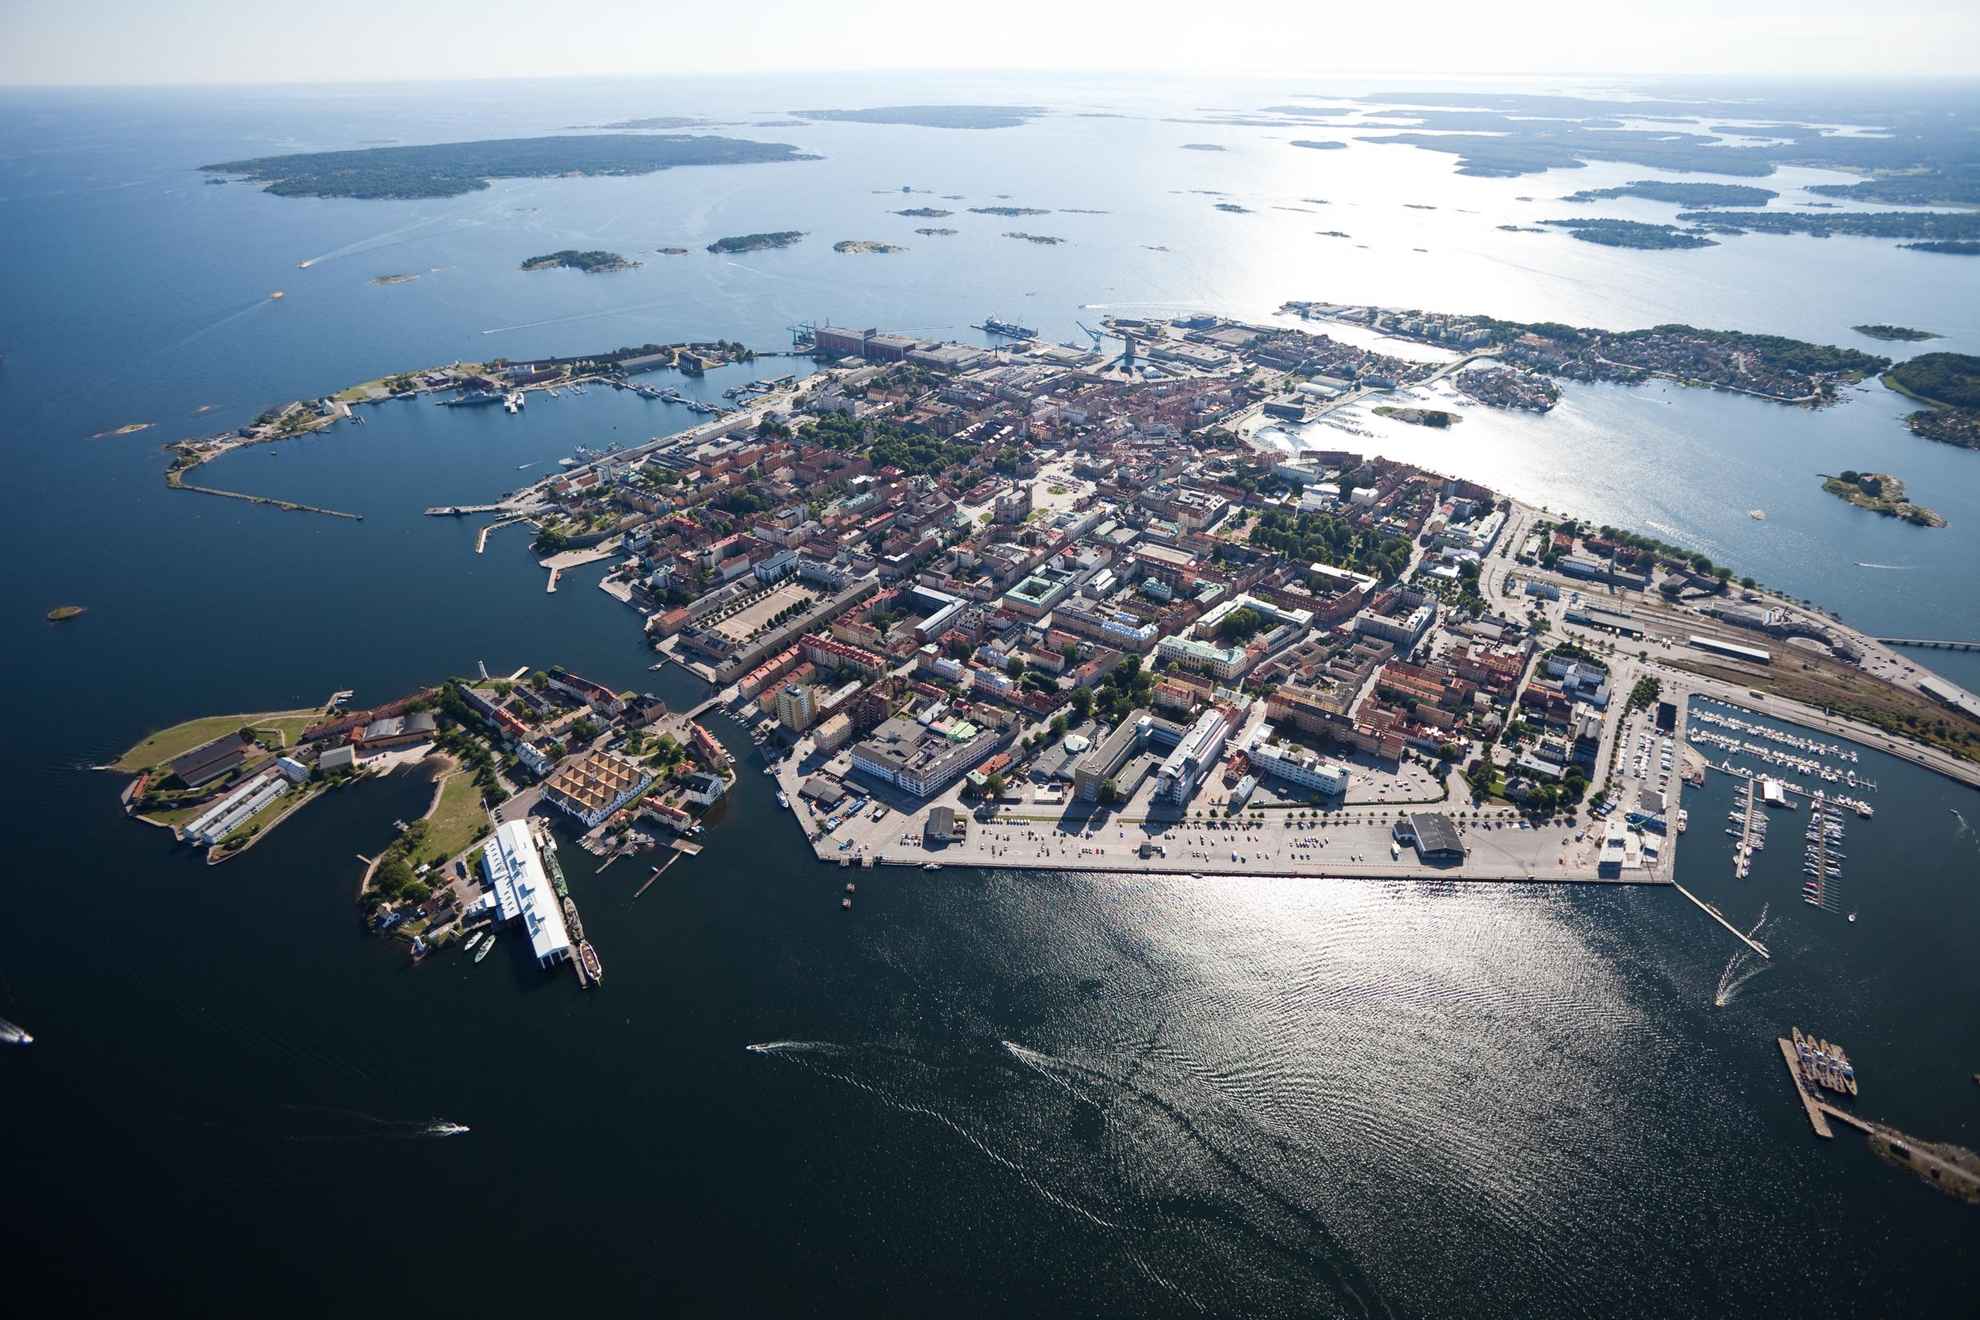 Uitzicht over Karlskrona, Blekinge